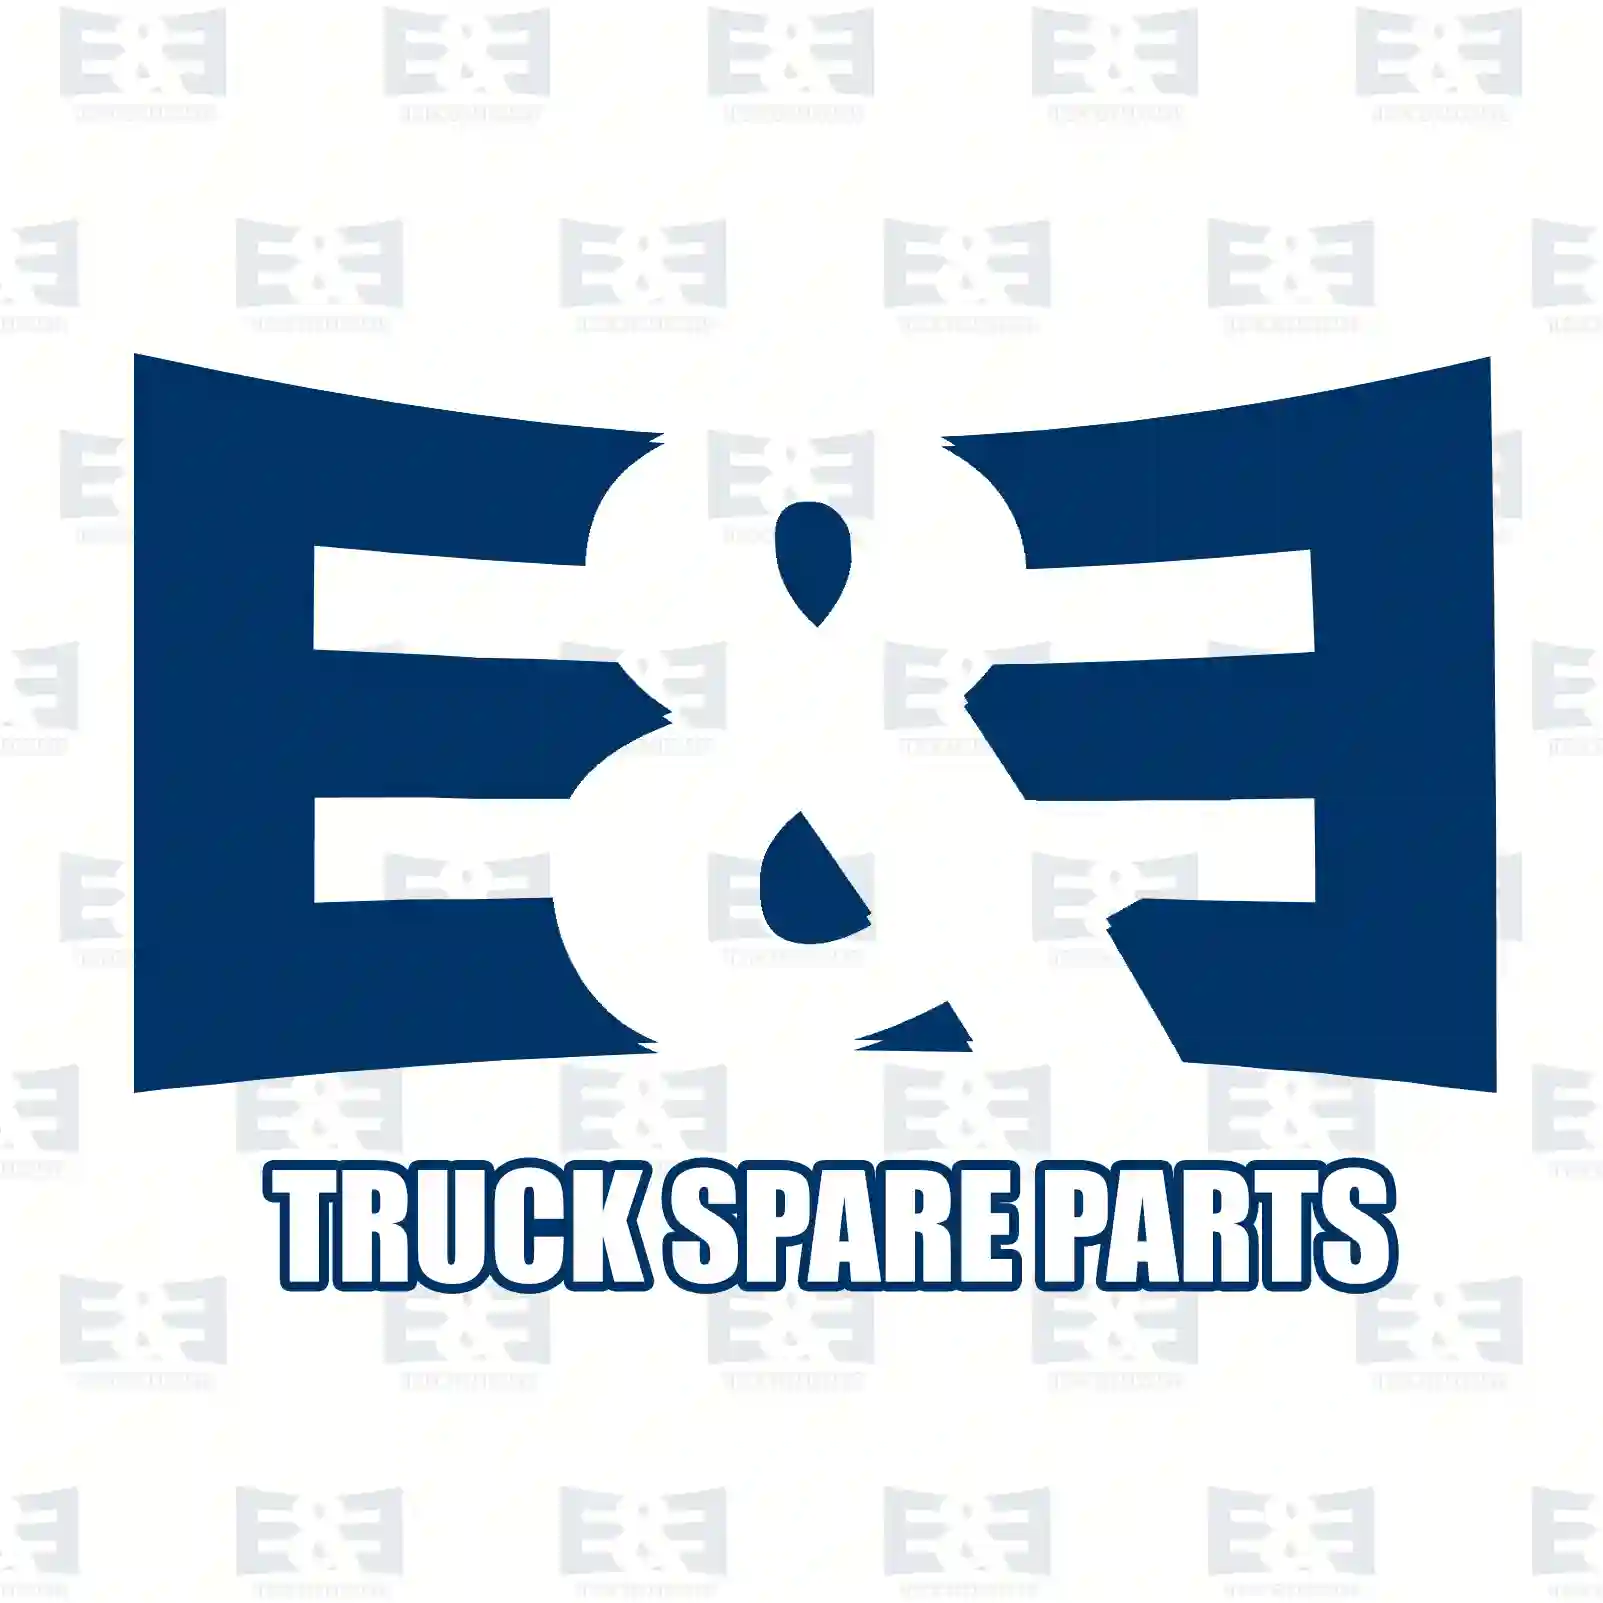 Fan clutch, 2E2201008, 5010619459, 74209 ||  2E2201008 E&E Truck Spare Parts | Truck Spare Parts, Auotomotive Spare Parts Fan clutch, 2E2201008, 5010619459, 74209 ||  2E2201008 E&E Truck Spare Parts | Truck Spare Parts, Auotomotive Spare Parts